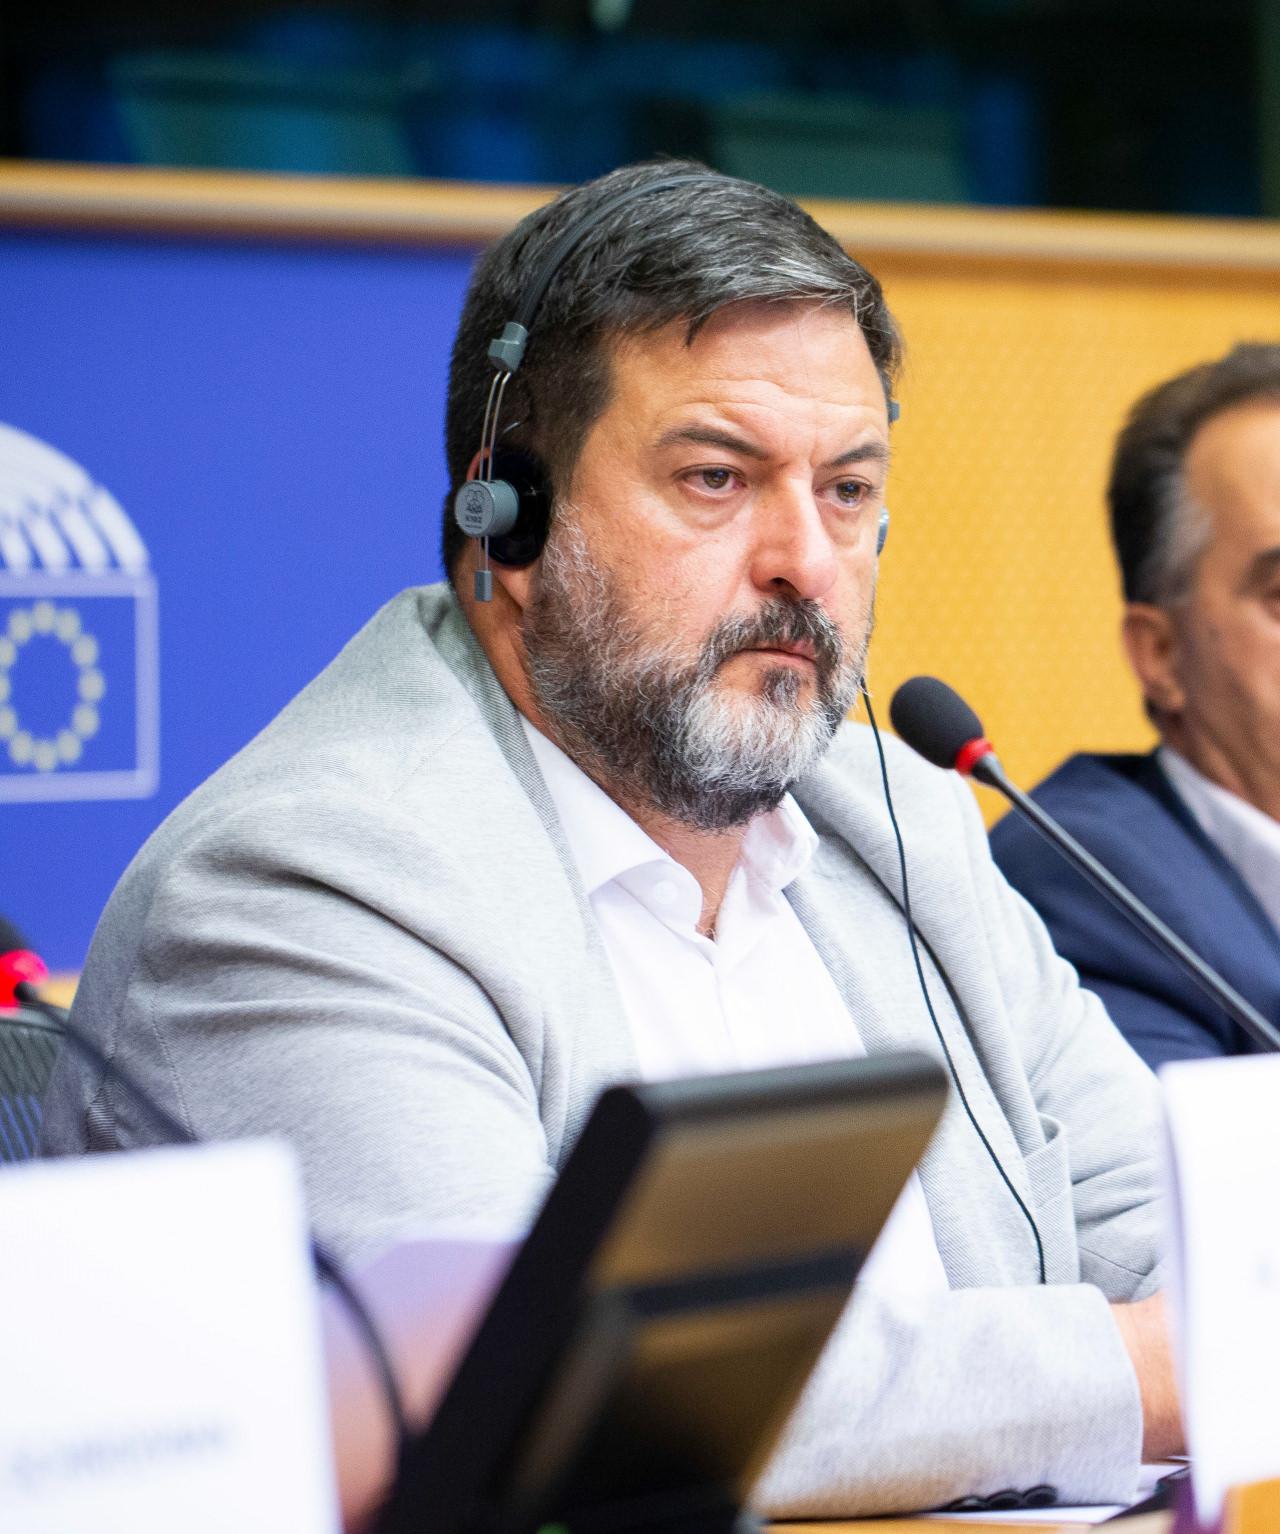 Avrupa Parlamenteri Manuel Pineda Marin